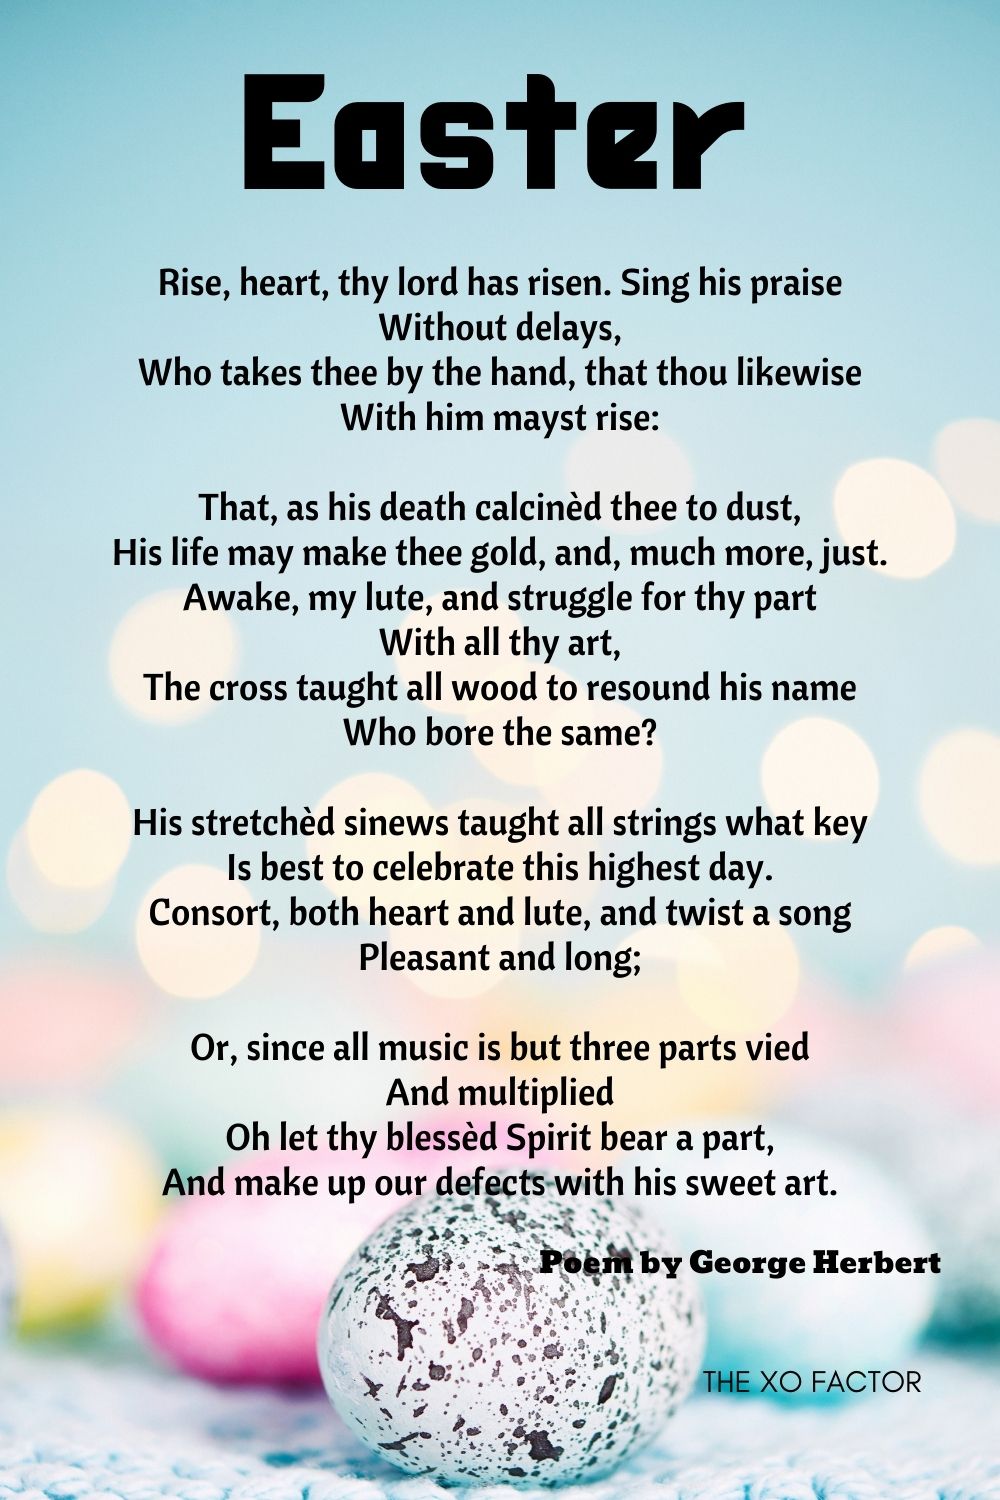 Easter Poem by George Herbert